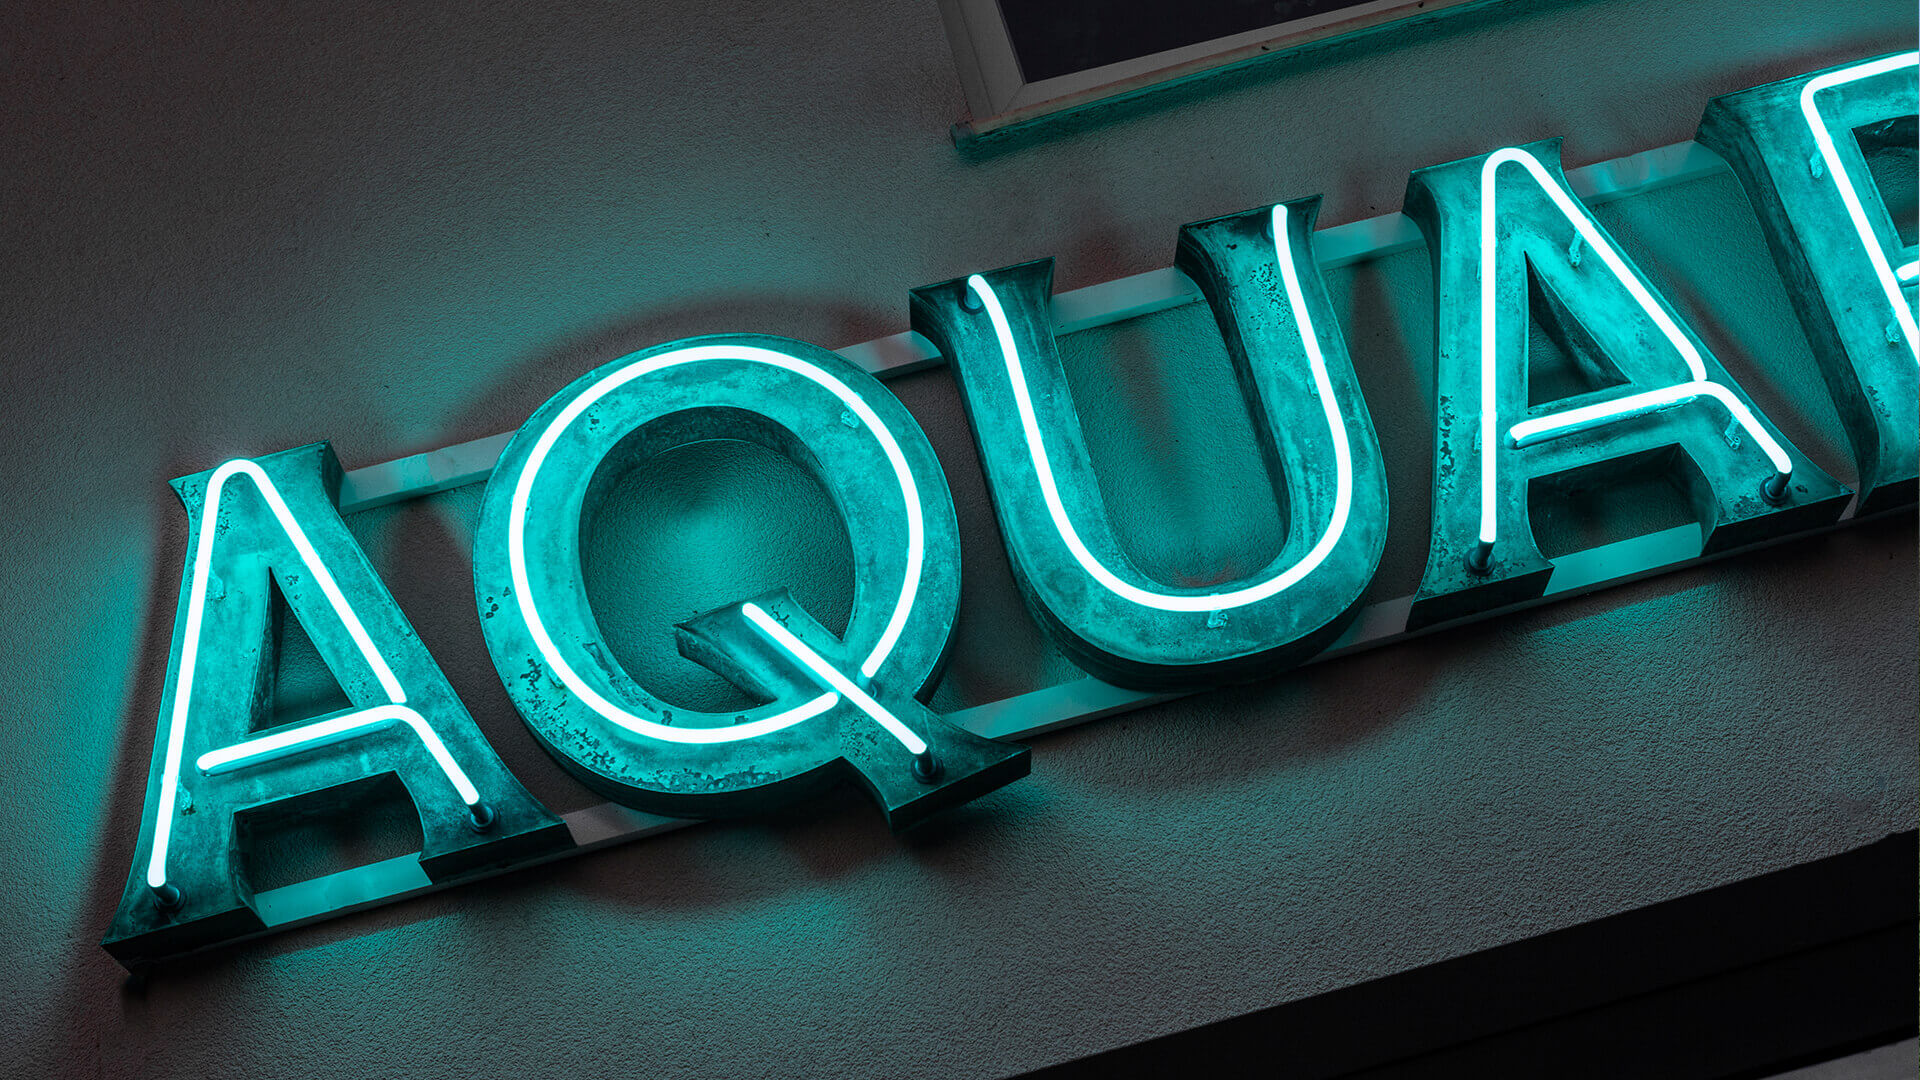 aquarium aquarium - aquarium-néon-sur-la-muraille-du-bâtiment-lettres-couvertes-patina-néon-sur-l'entrée-du-restaurant-néon-vert-sur-la-muraille-du-bâtiment-néon-sur-une-stele-sous-verre (31).jpg